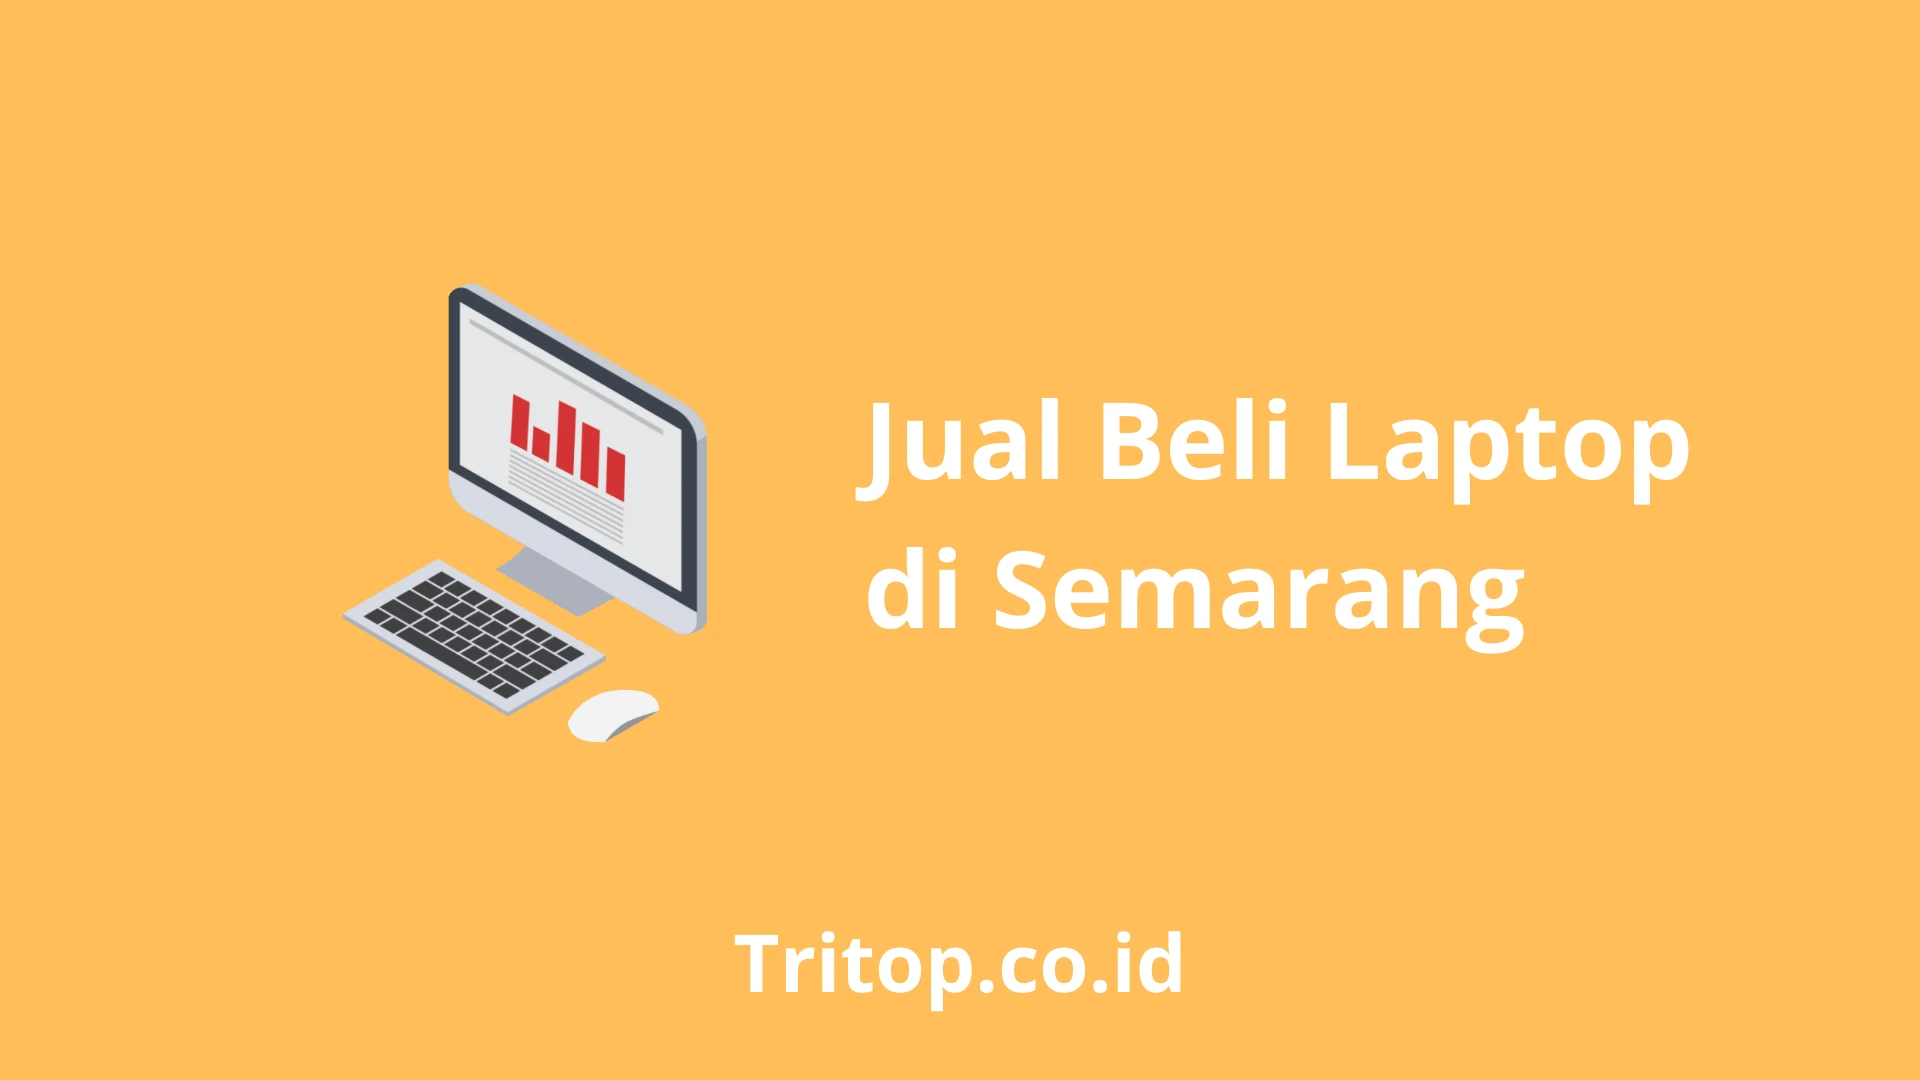 Jual Beli Laptop Semarang tritop.co.id